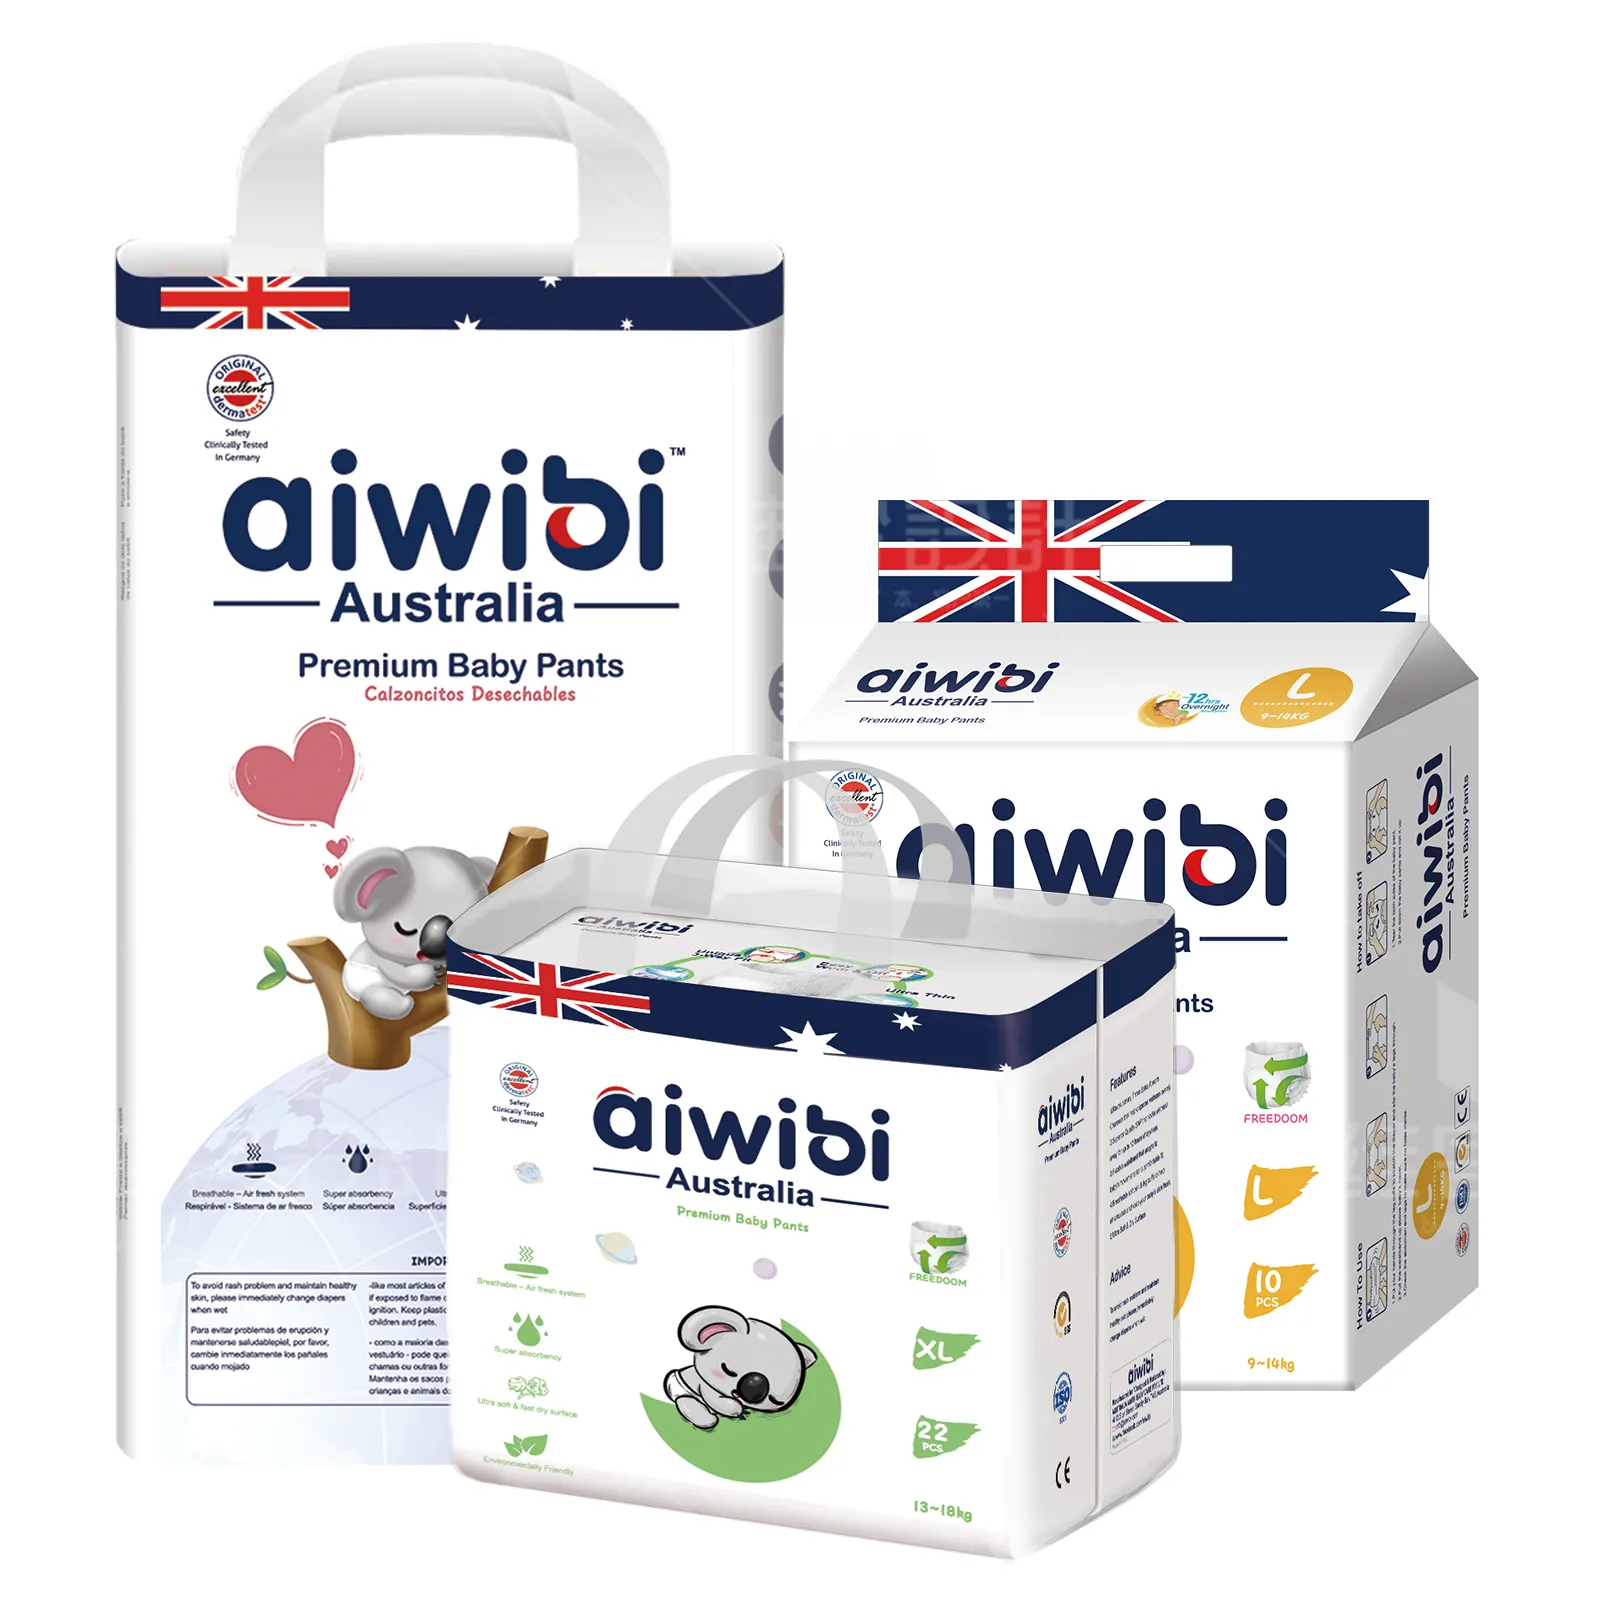 AIWIBI marque promotion personnaliser et pas cher joli bébé fine lâche bébé couche pantalon petite taille en stock pas de quantité minimale de commande